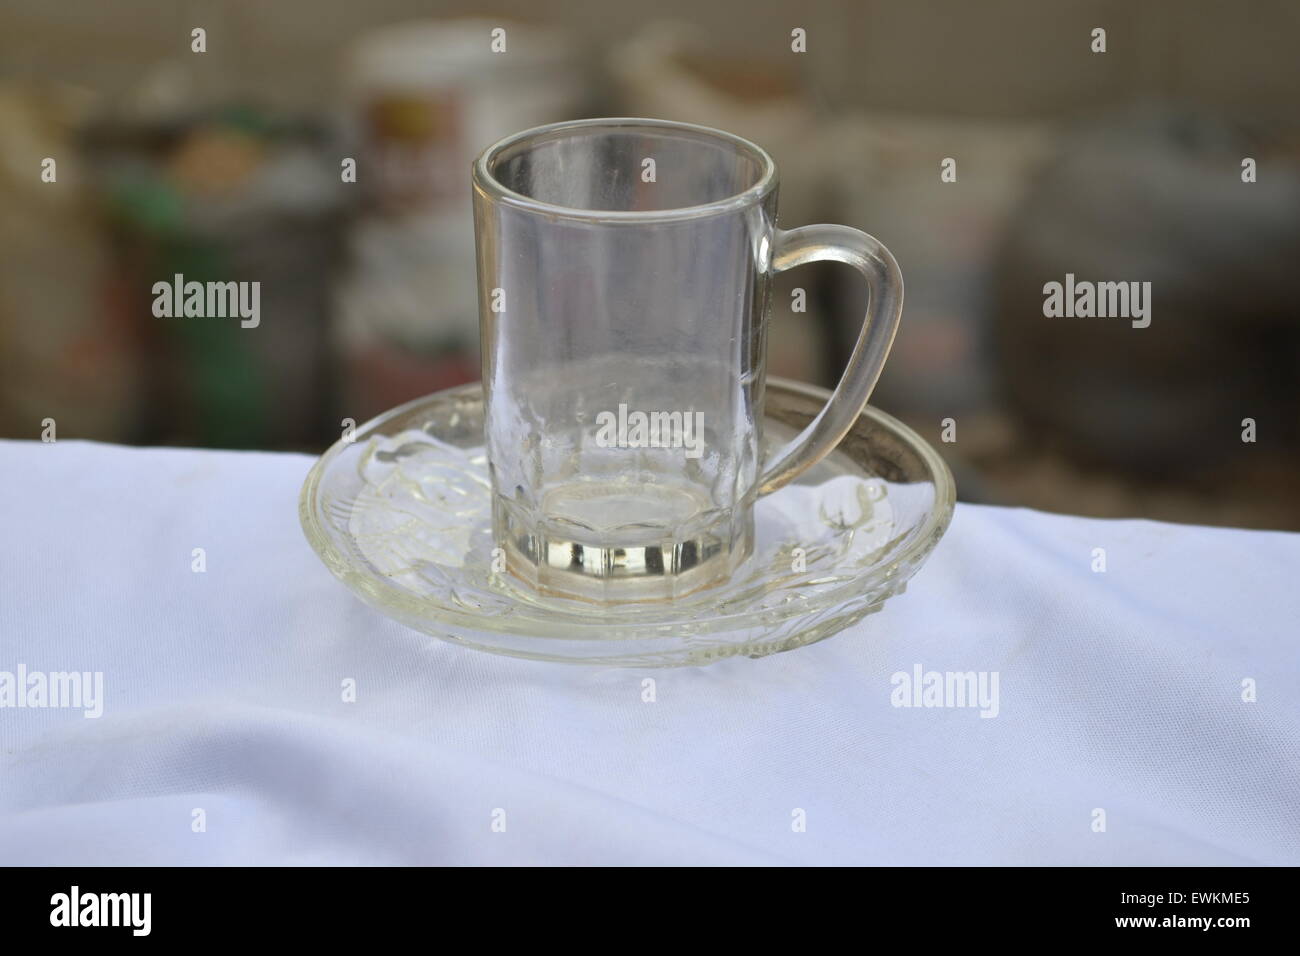 https://c8.alamy.com/comp/EWKME5/a-beverage-small-glass-cup-on-saucer-EWKME5.jpg